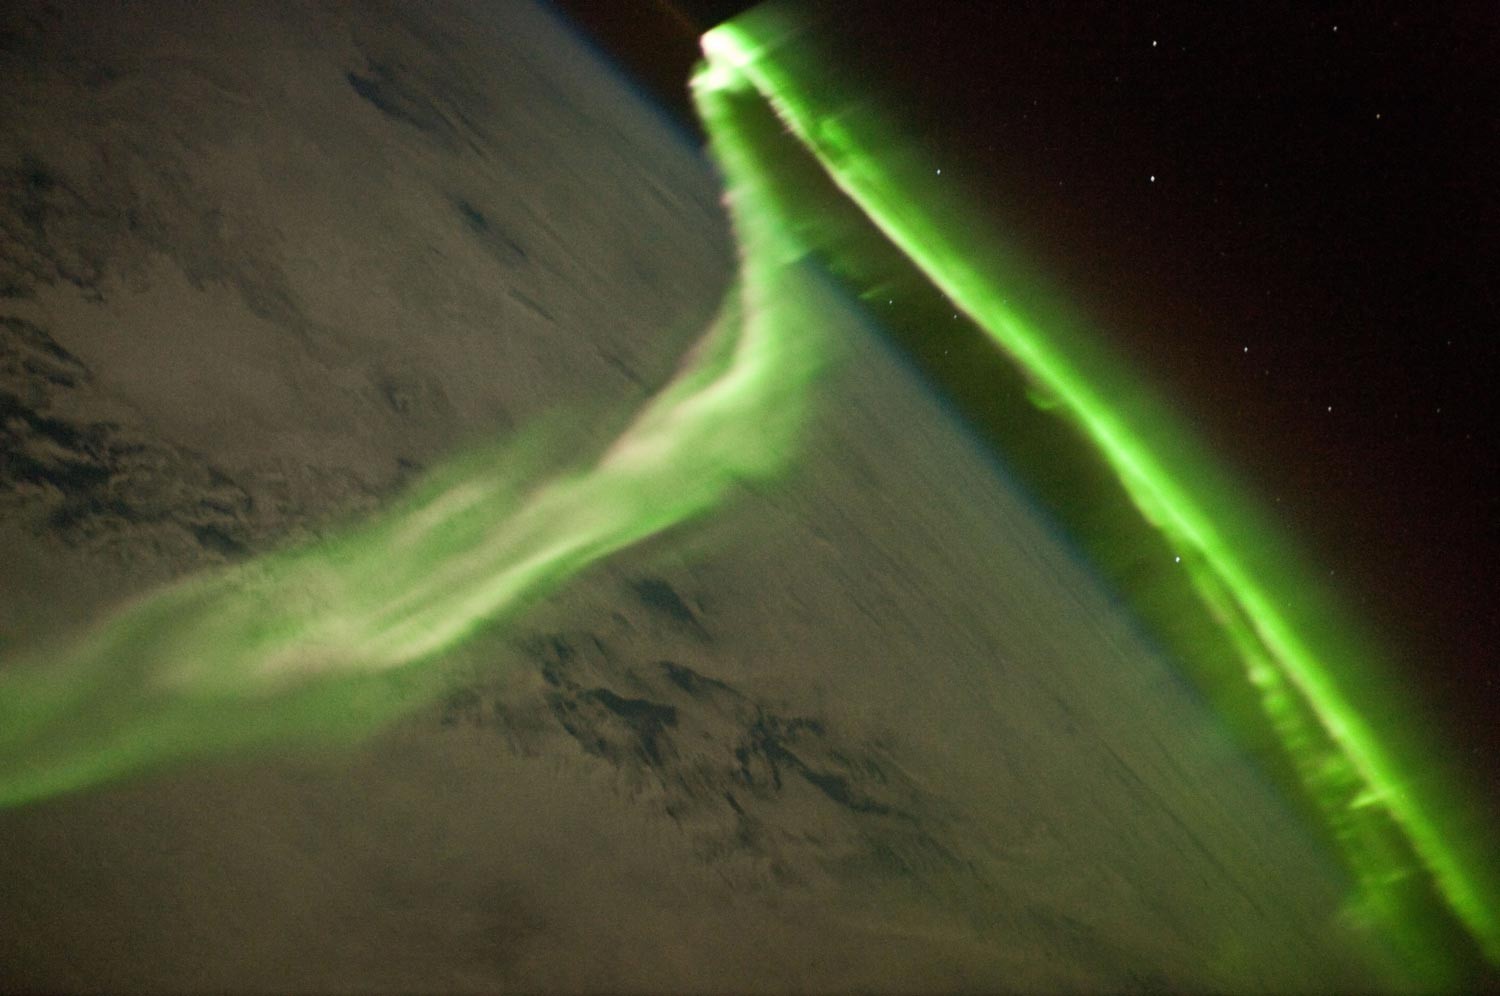 L'aurore polaire du 29 mai 2010 photographiée par les membres de l'ISS. Crédit ISS Expedition 23 Crew / Isal / Nasa
